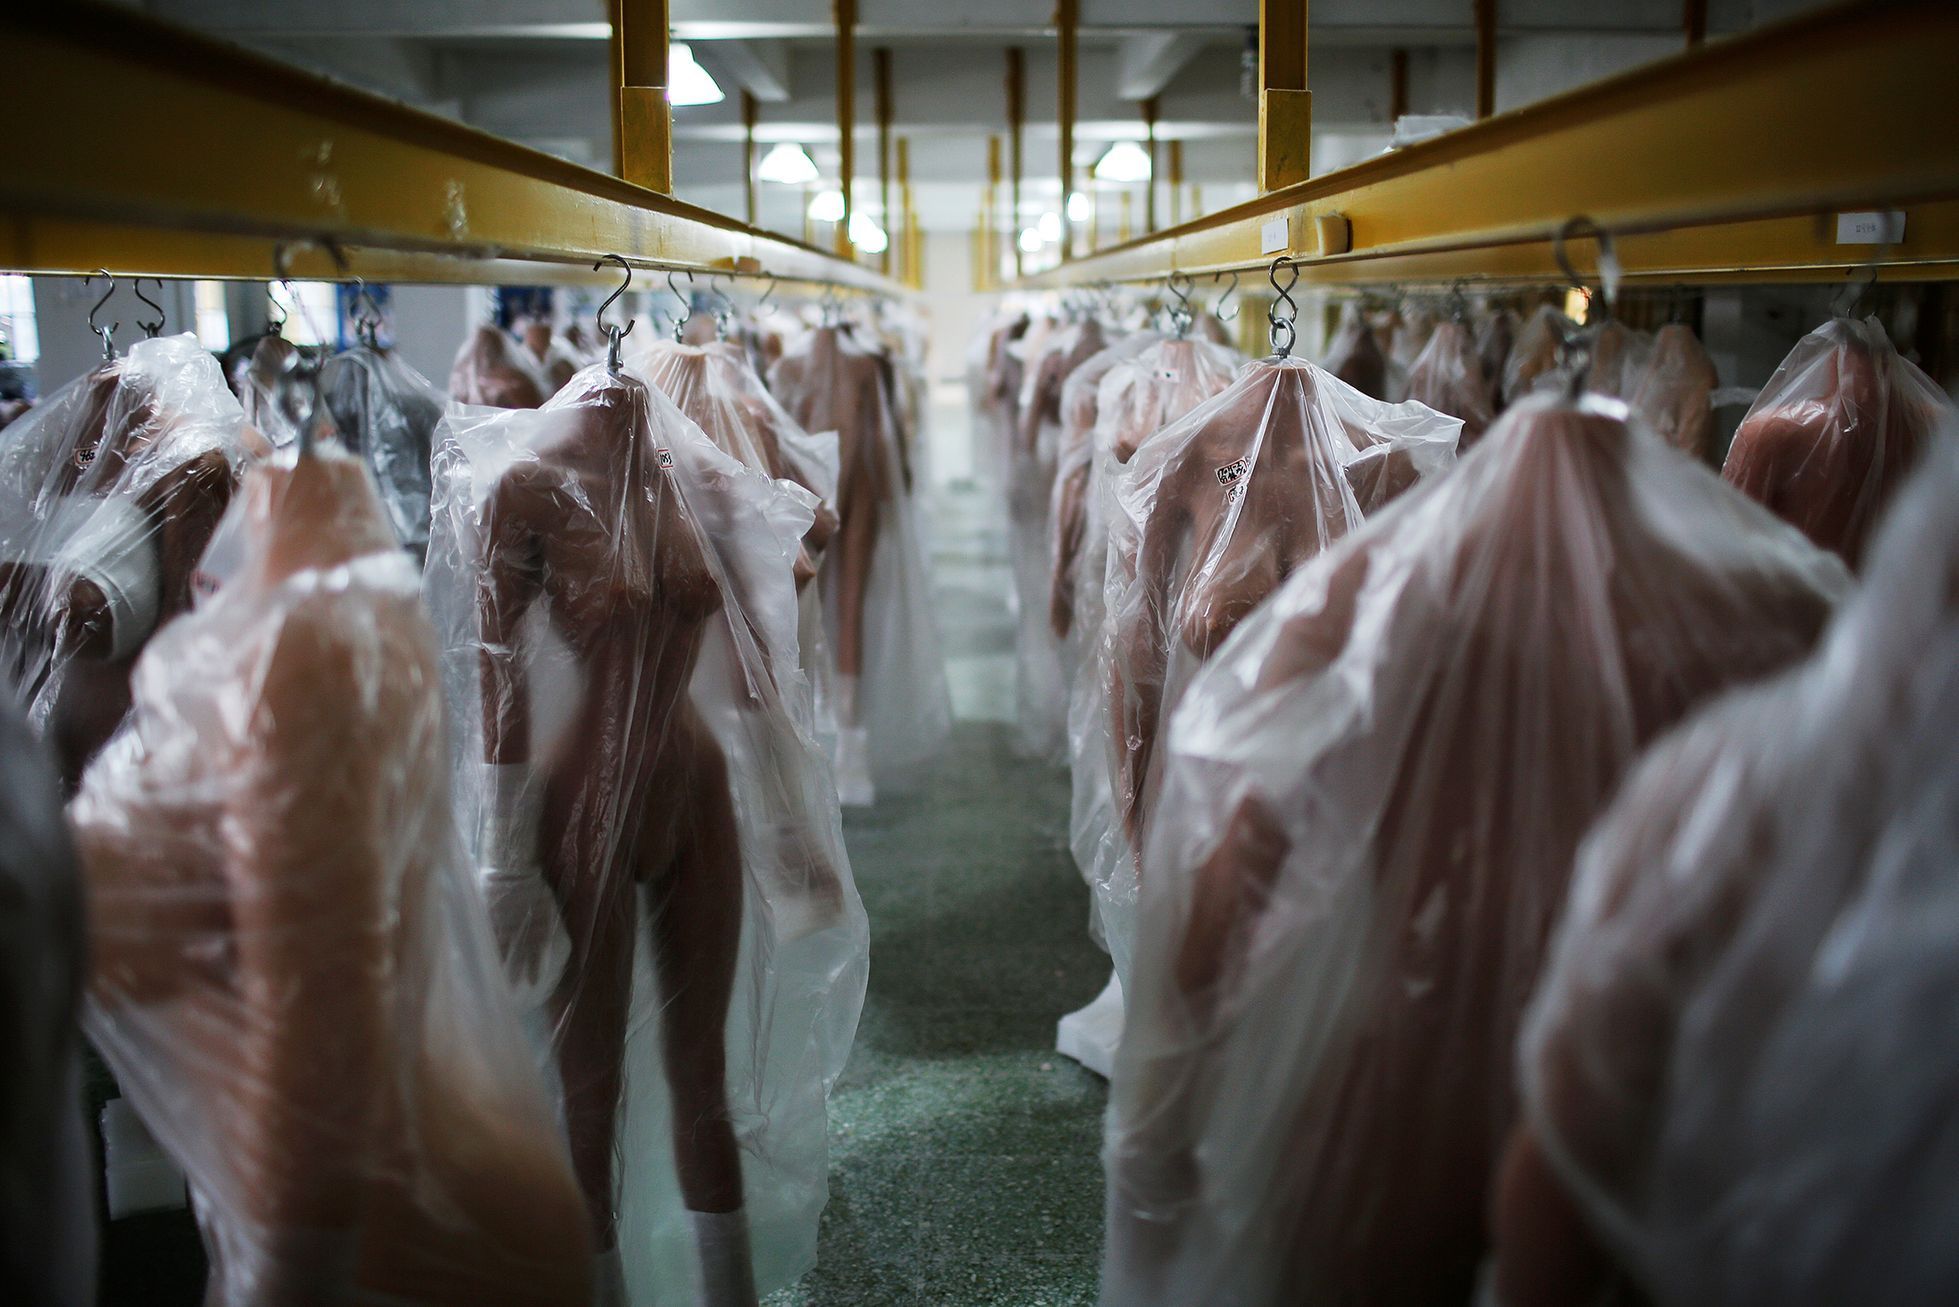 Fotogalerie / Tak se v Číně vyrábějí sexuální roboti / Reuters / 19